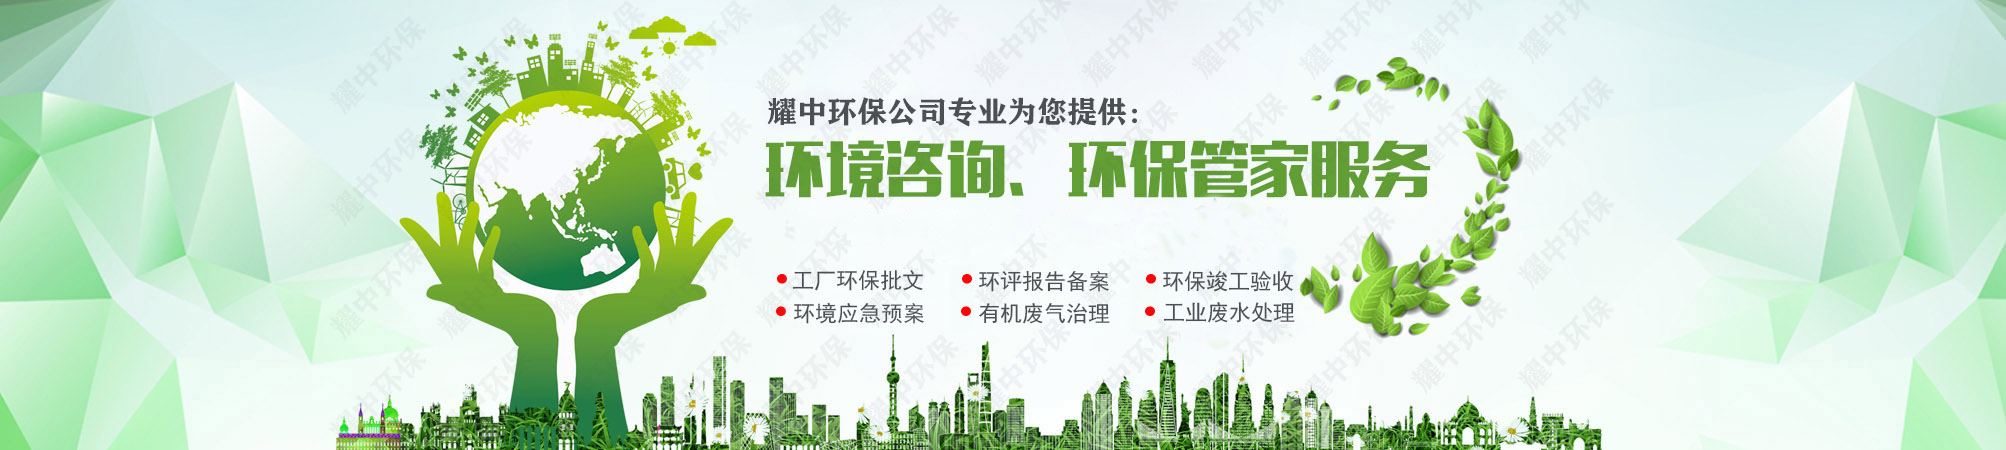 深圳工业废水治理工程安装,龙华观湖电路板生产废水治理